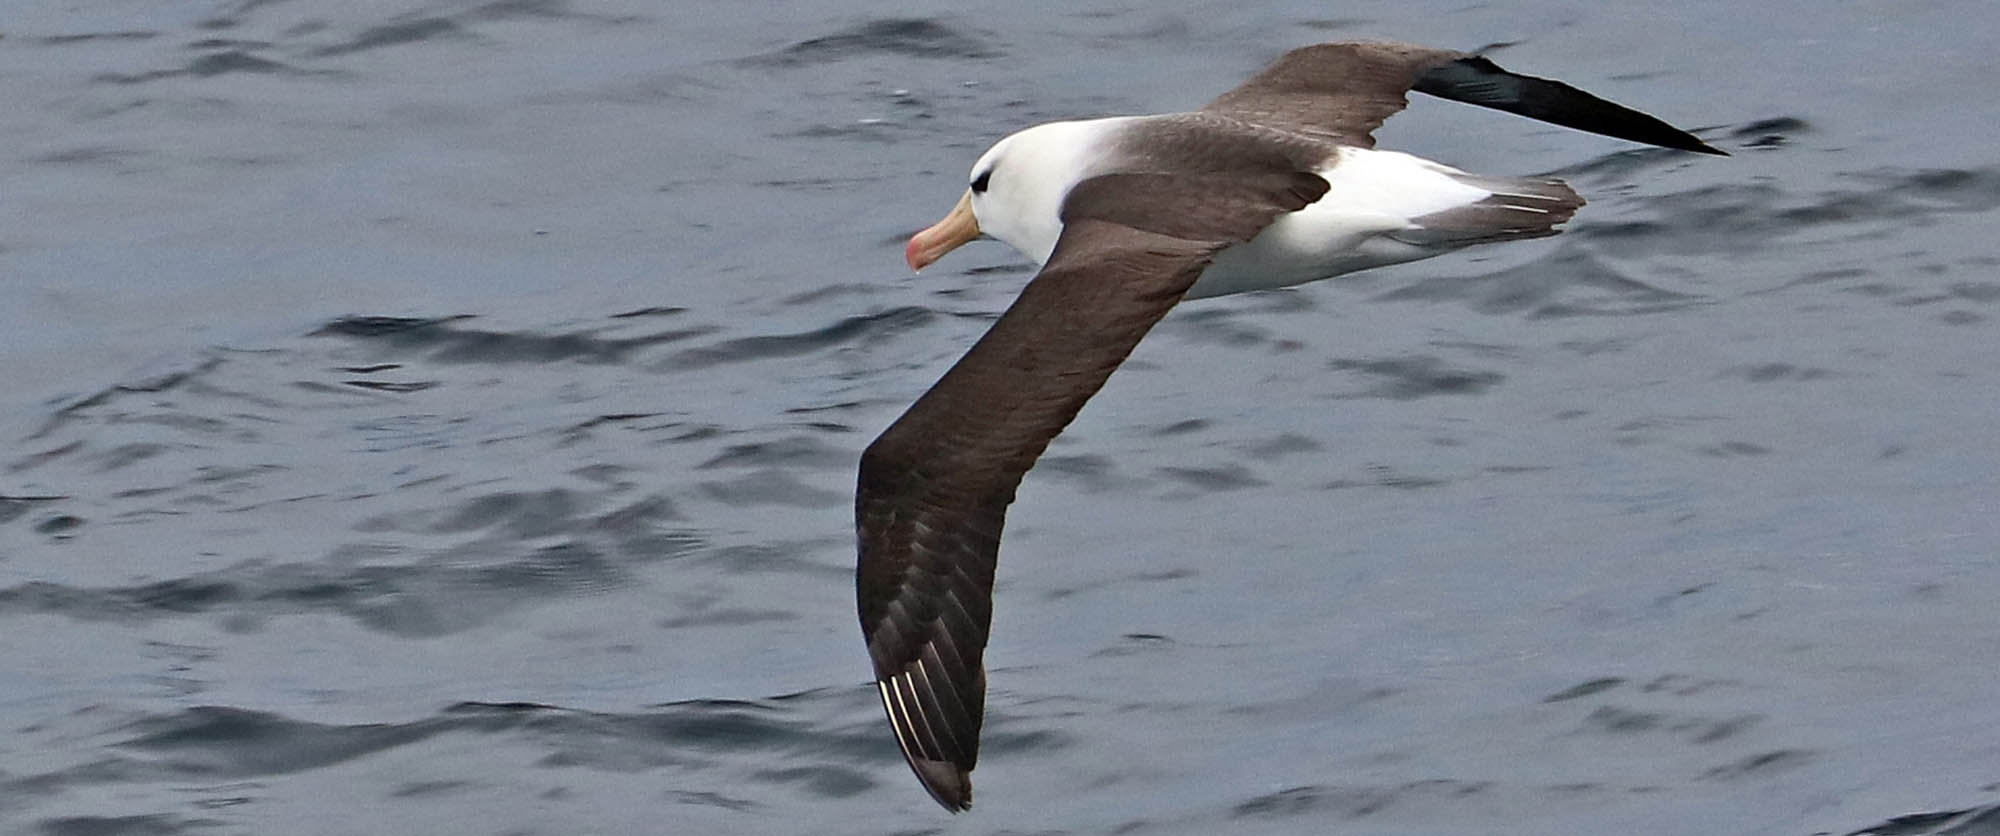 albatross-black-browed-cape-horn-